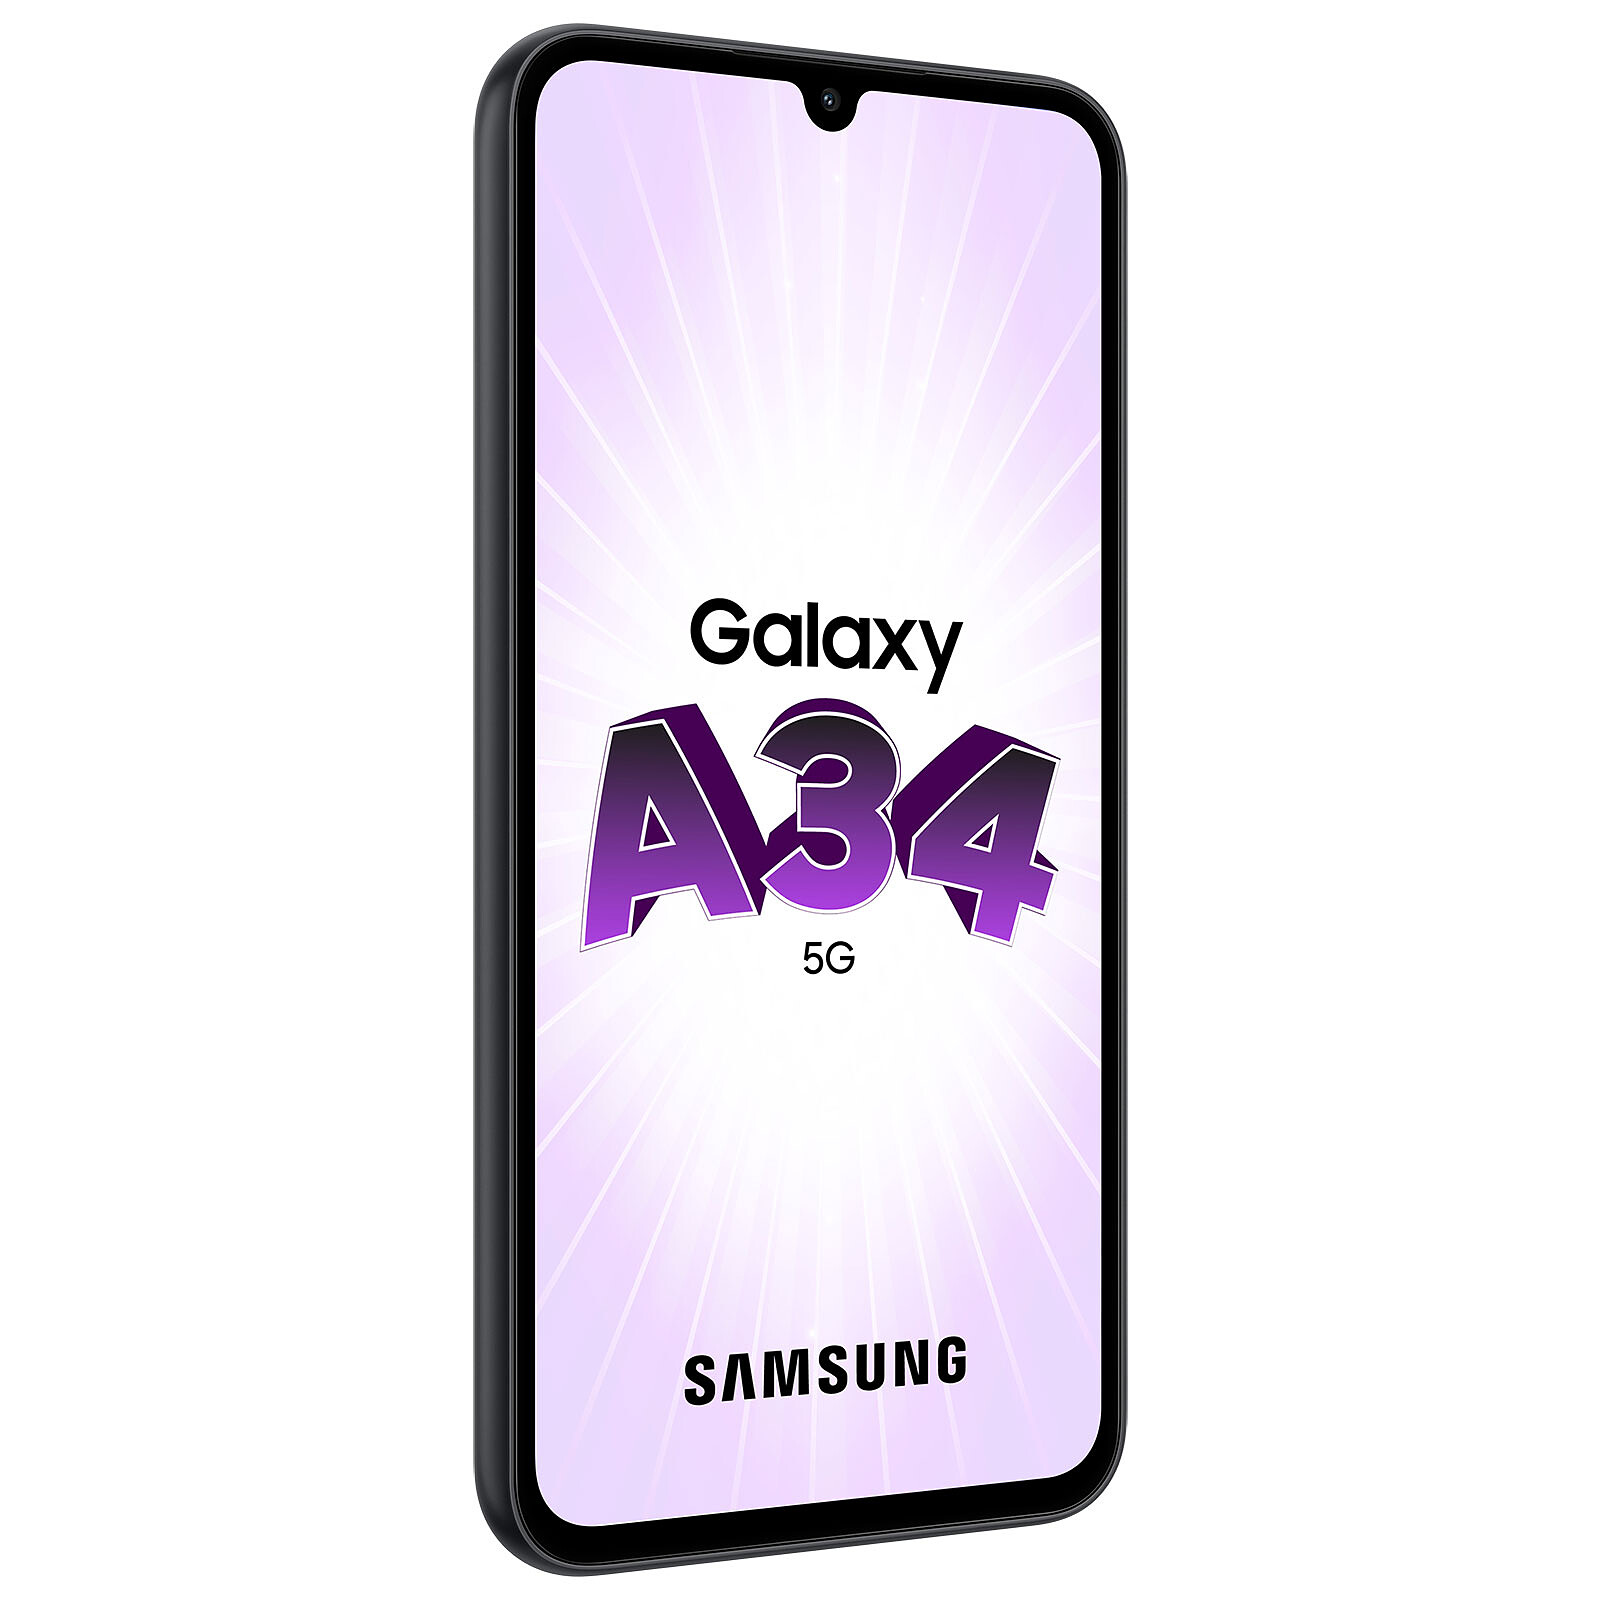 Nuevo Samsung Galaxy A34 5G ya en España: características y precio